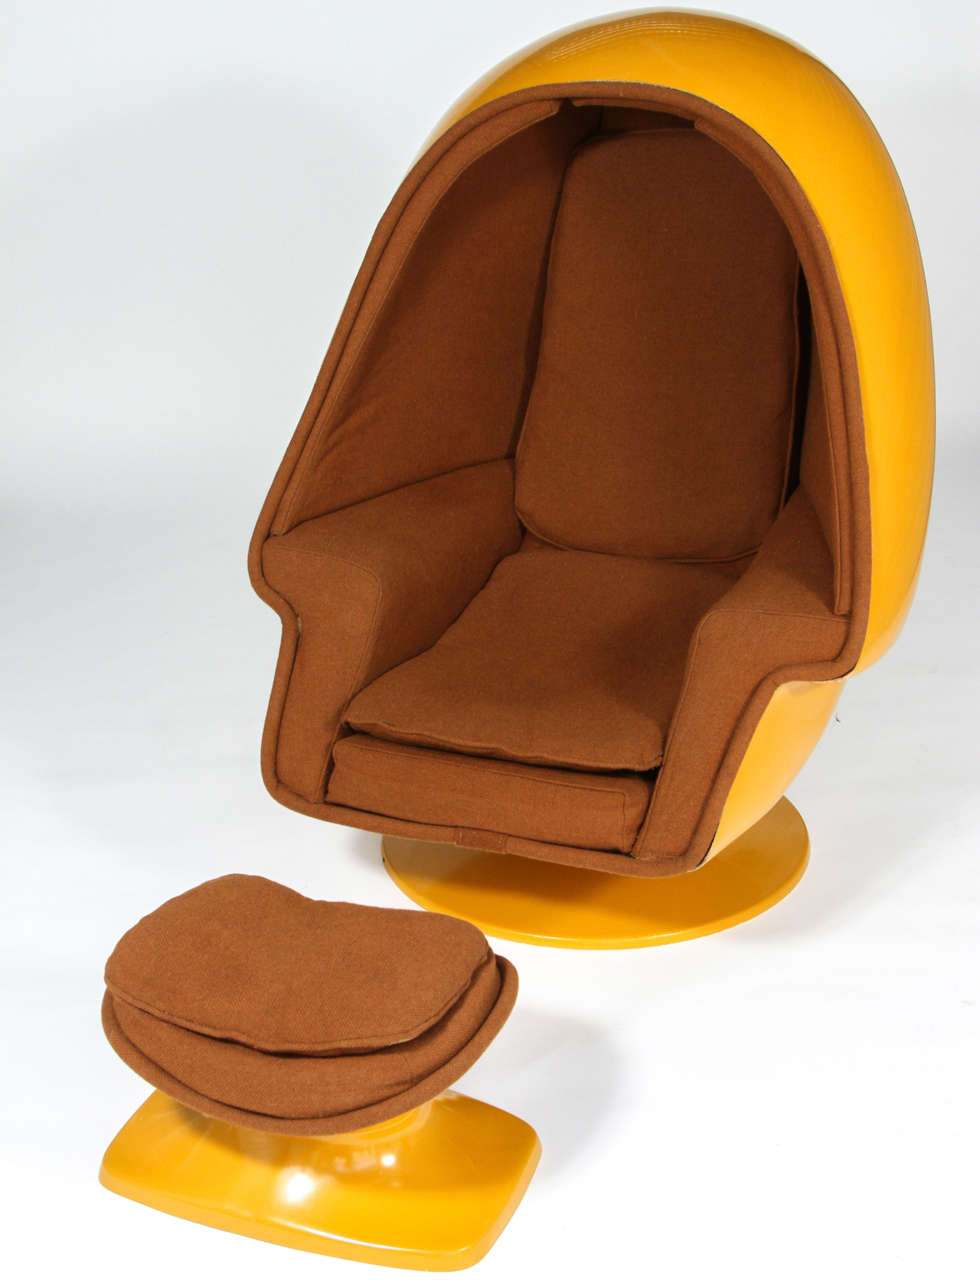 Seltener Vintage By Lee West Alpha Egg Chair,  Original senfgelbes Fiberglas und brauner Stoff.
Die 1970er Jahre waren ein wichtiges Jahrzehnt für den Eierstuhl. Etwa zur gleichen Zeit, als der Egg Sound Chair auf den Markt kam, entwarf Lee West